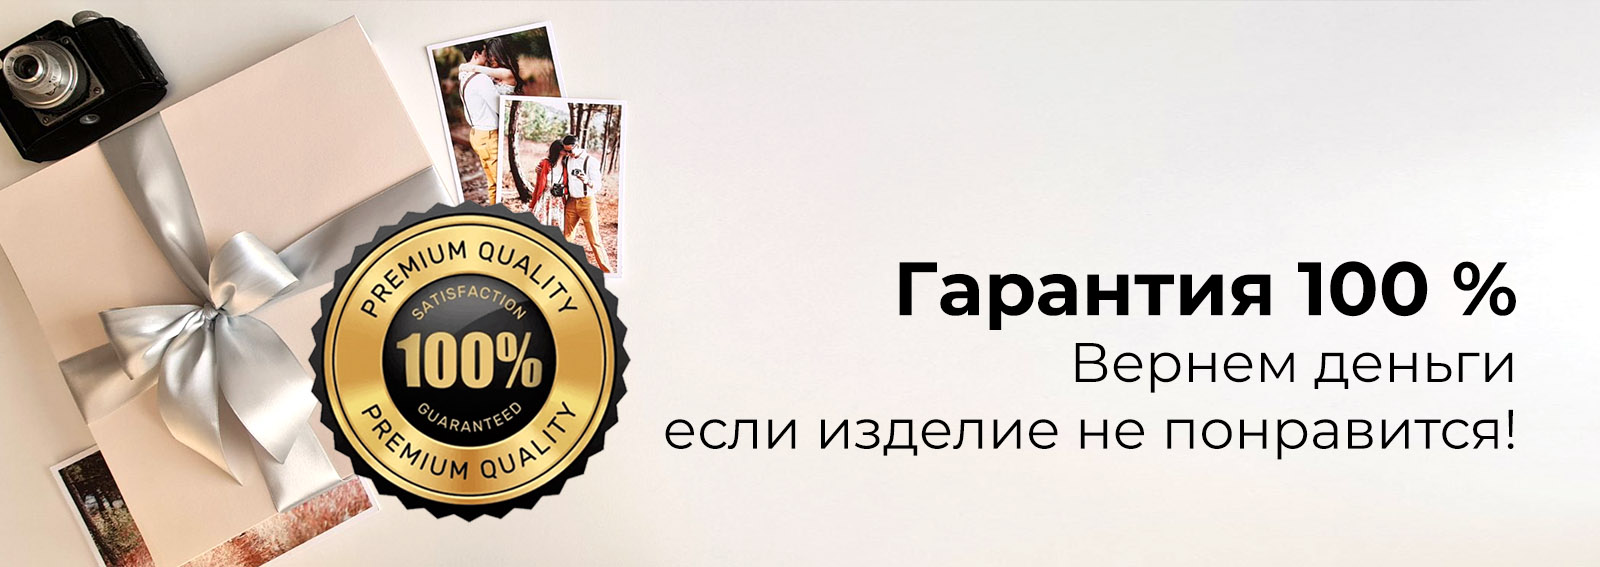 фотокнига Нижний Новгород, качественные фотокниги, фотокниги хорошего качества, самые лучшие фотокниги